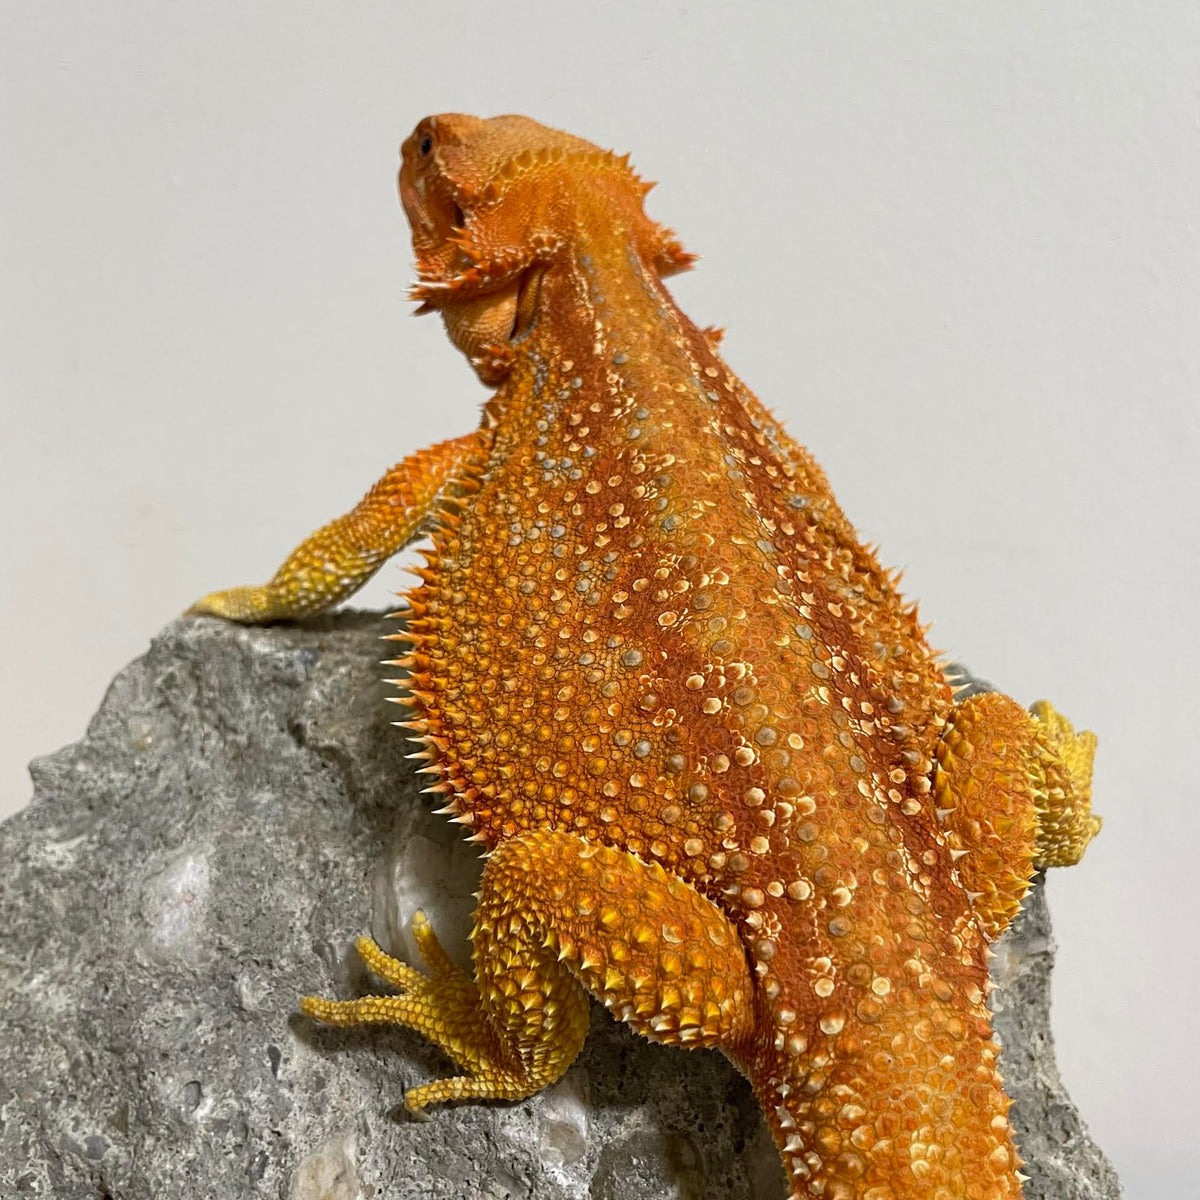 Red &amp; Orange Hypo Dunner Color Stripe Sub Adult Female 66% Het Translucent - Reptile Deli Inc.